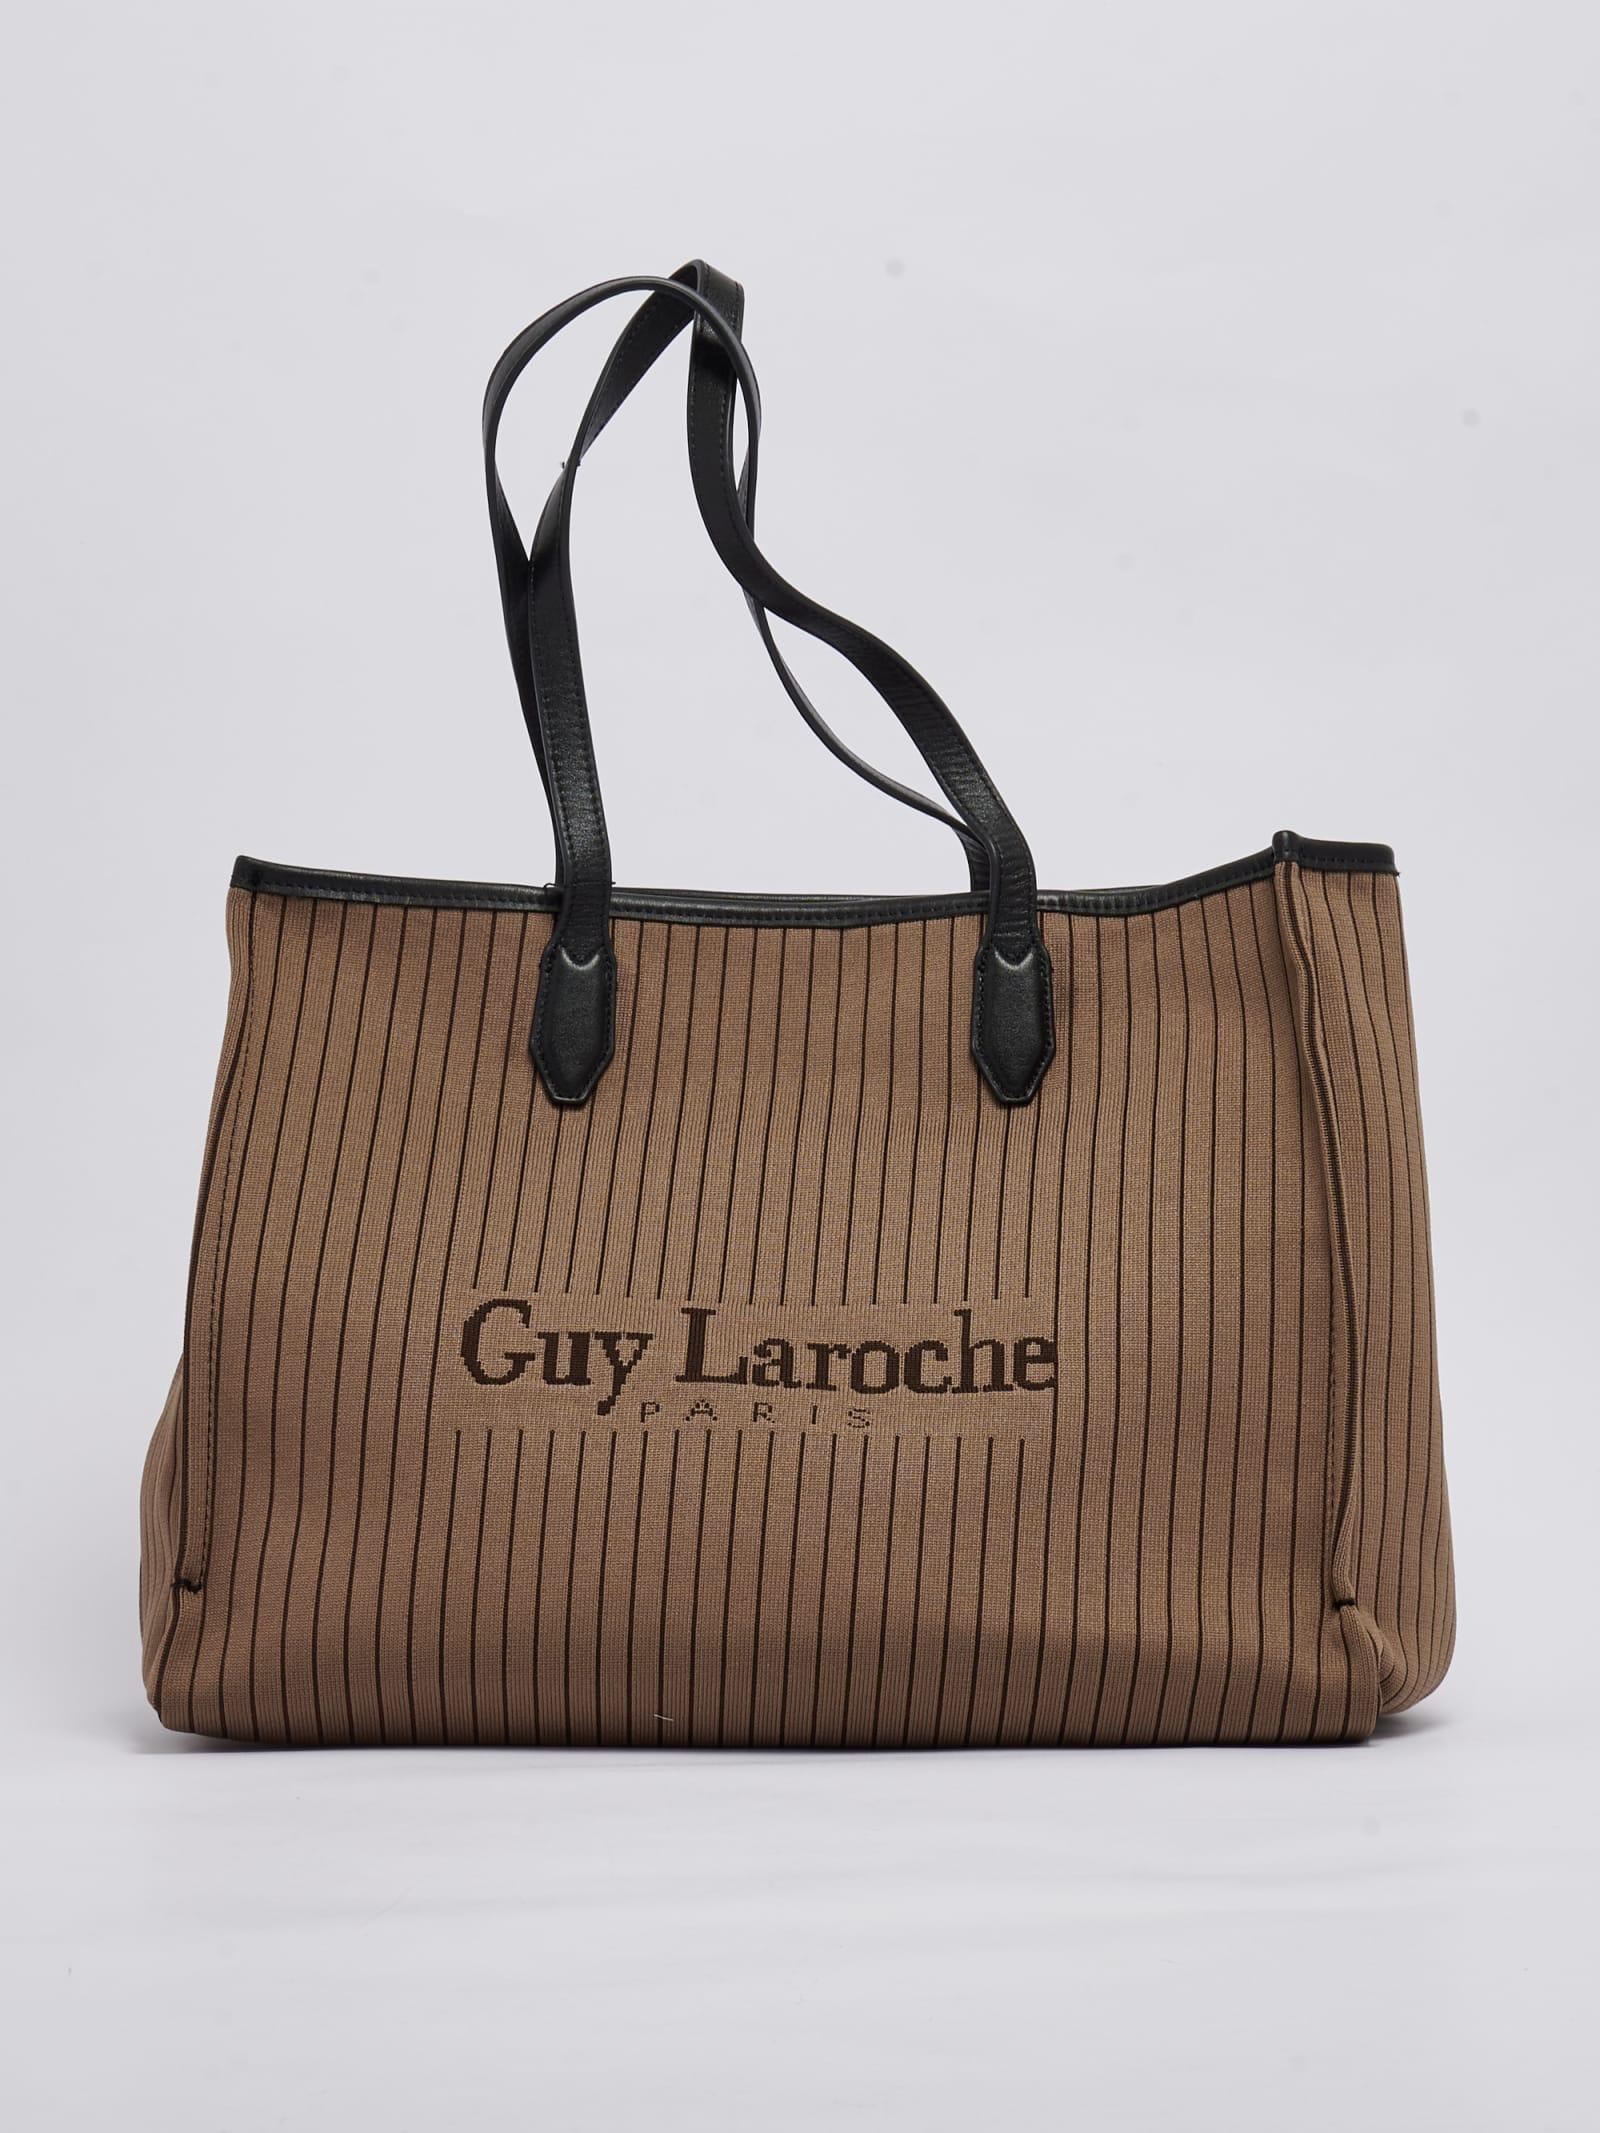 GUY LAROCHE Bags for Women